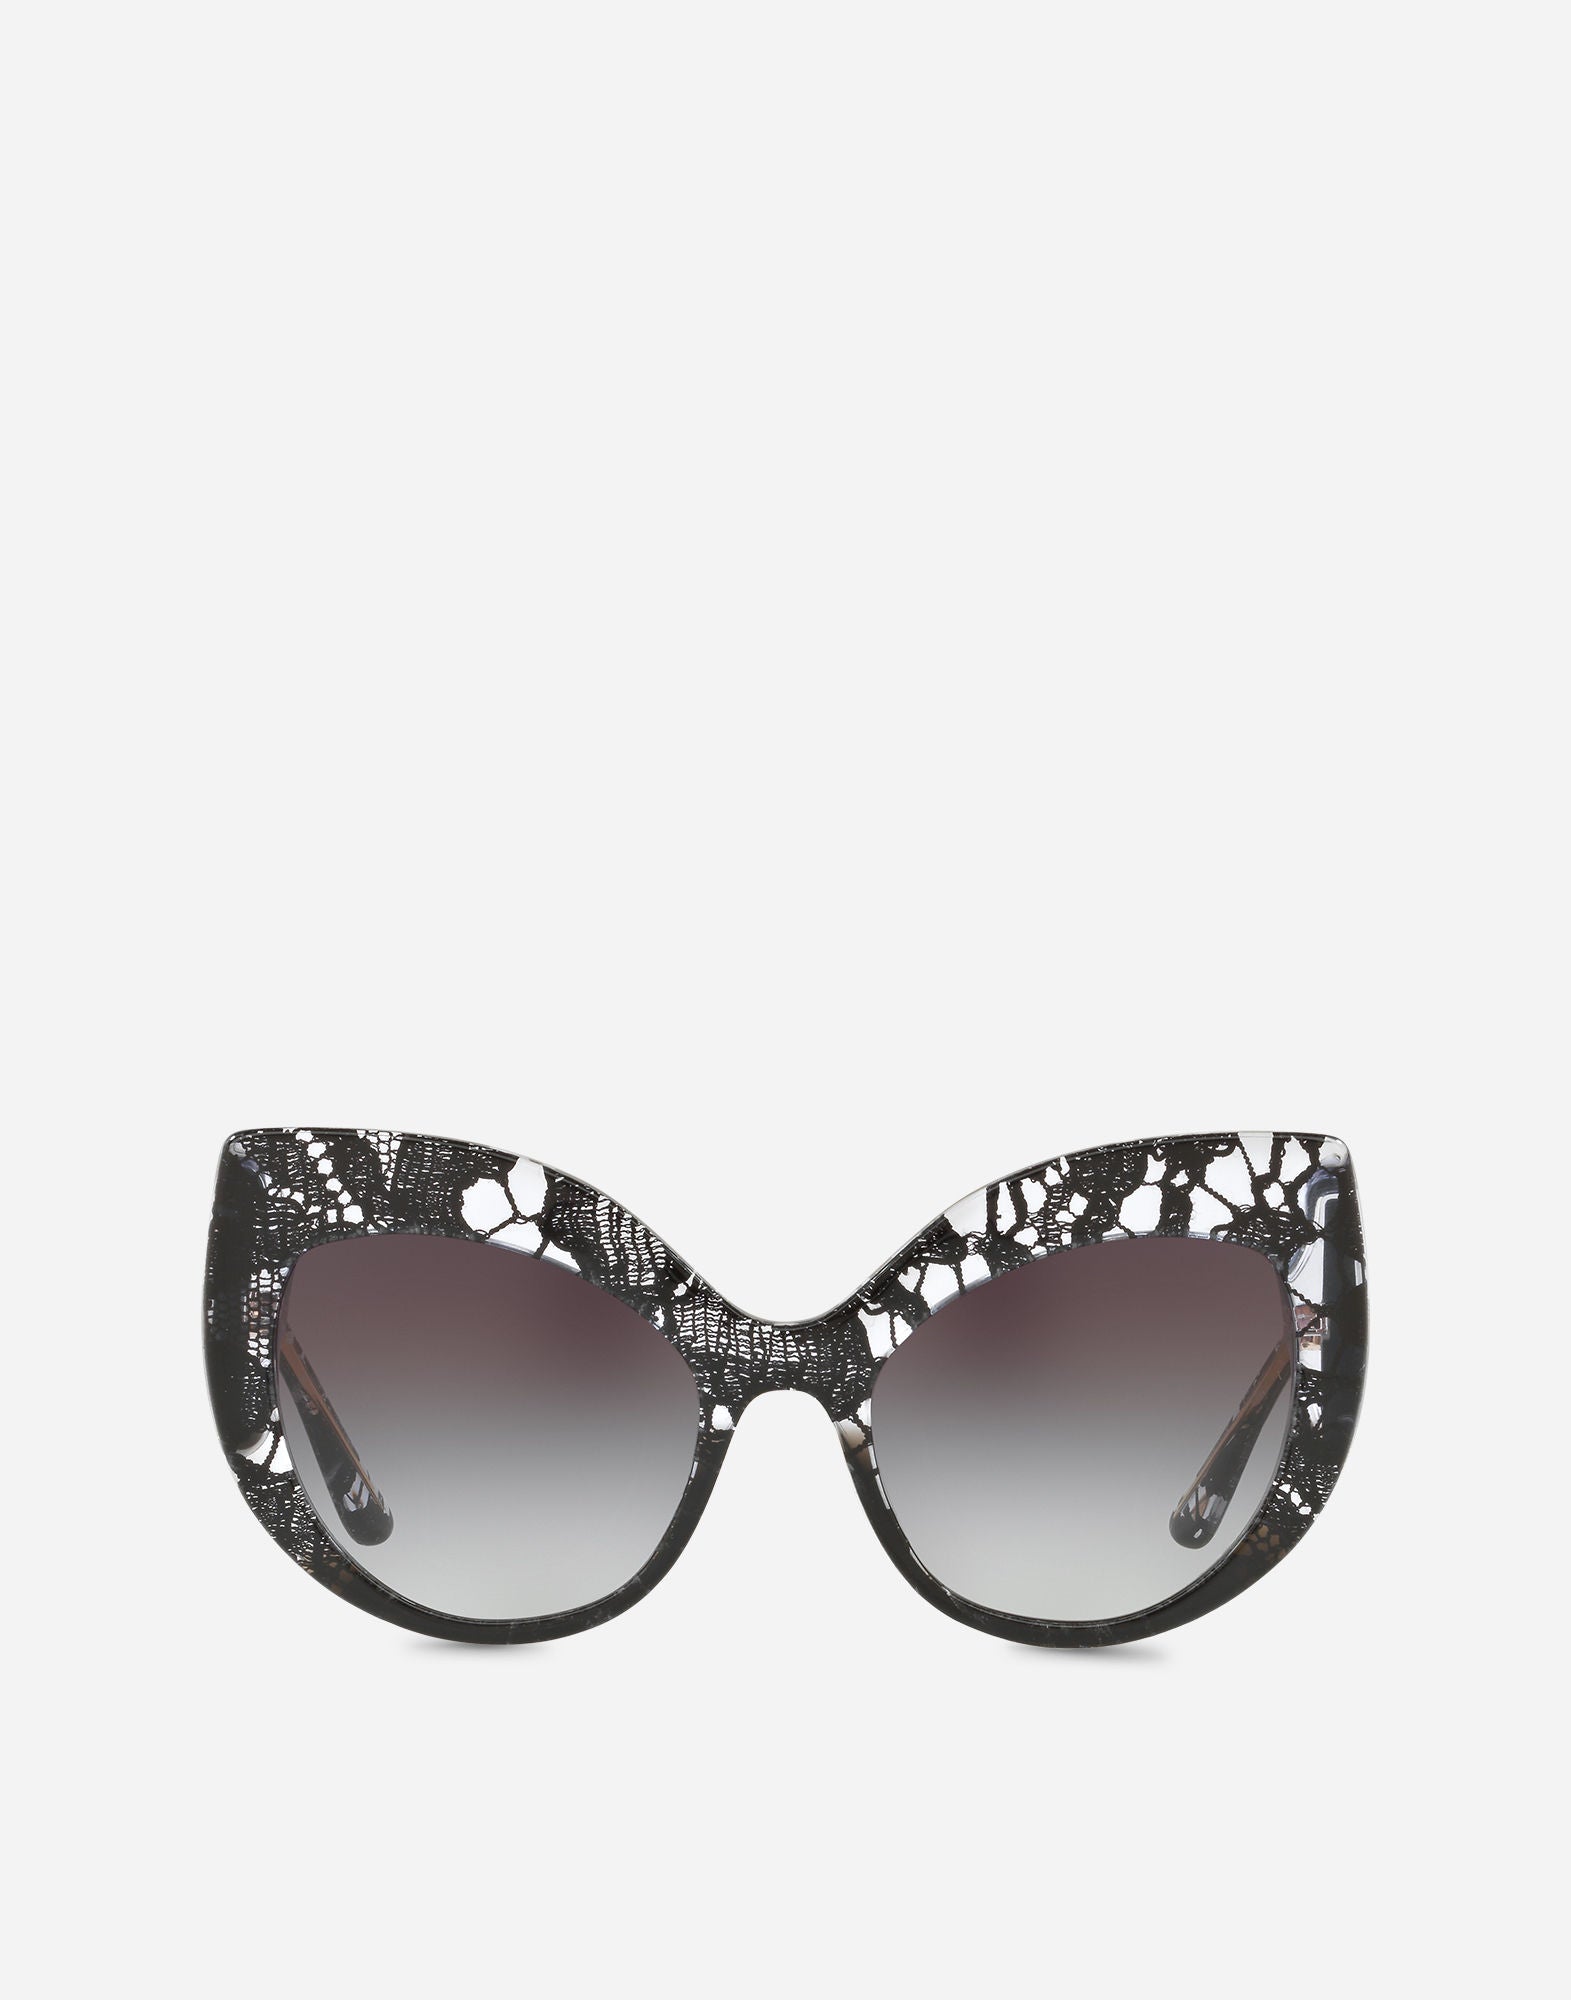 dg sunglasses price